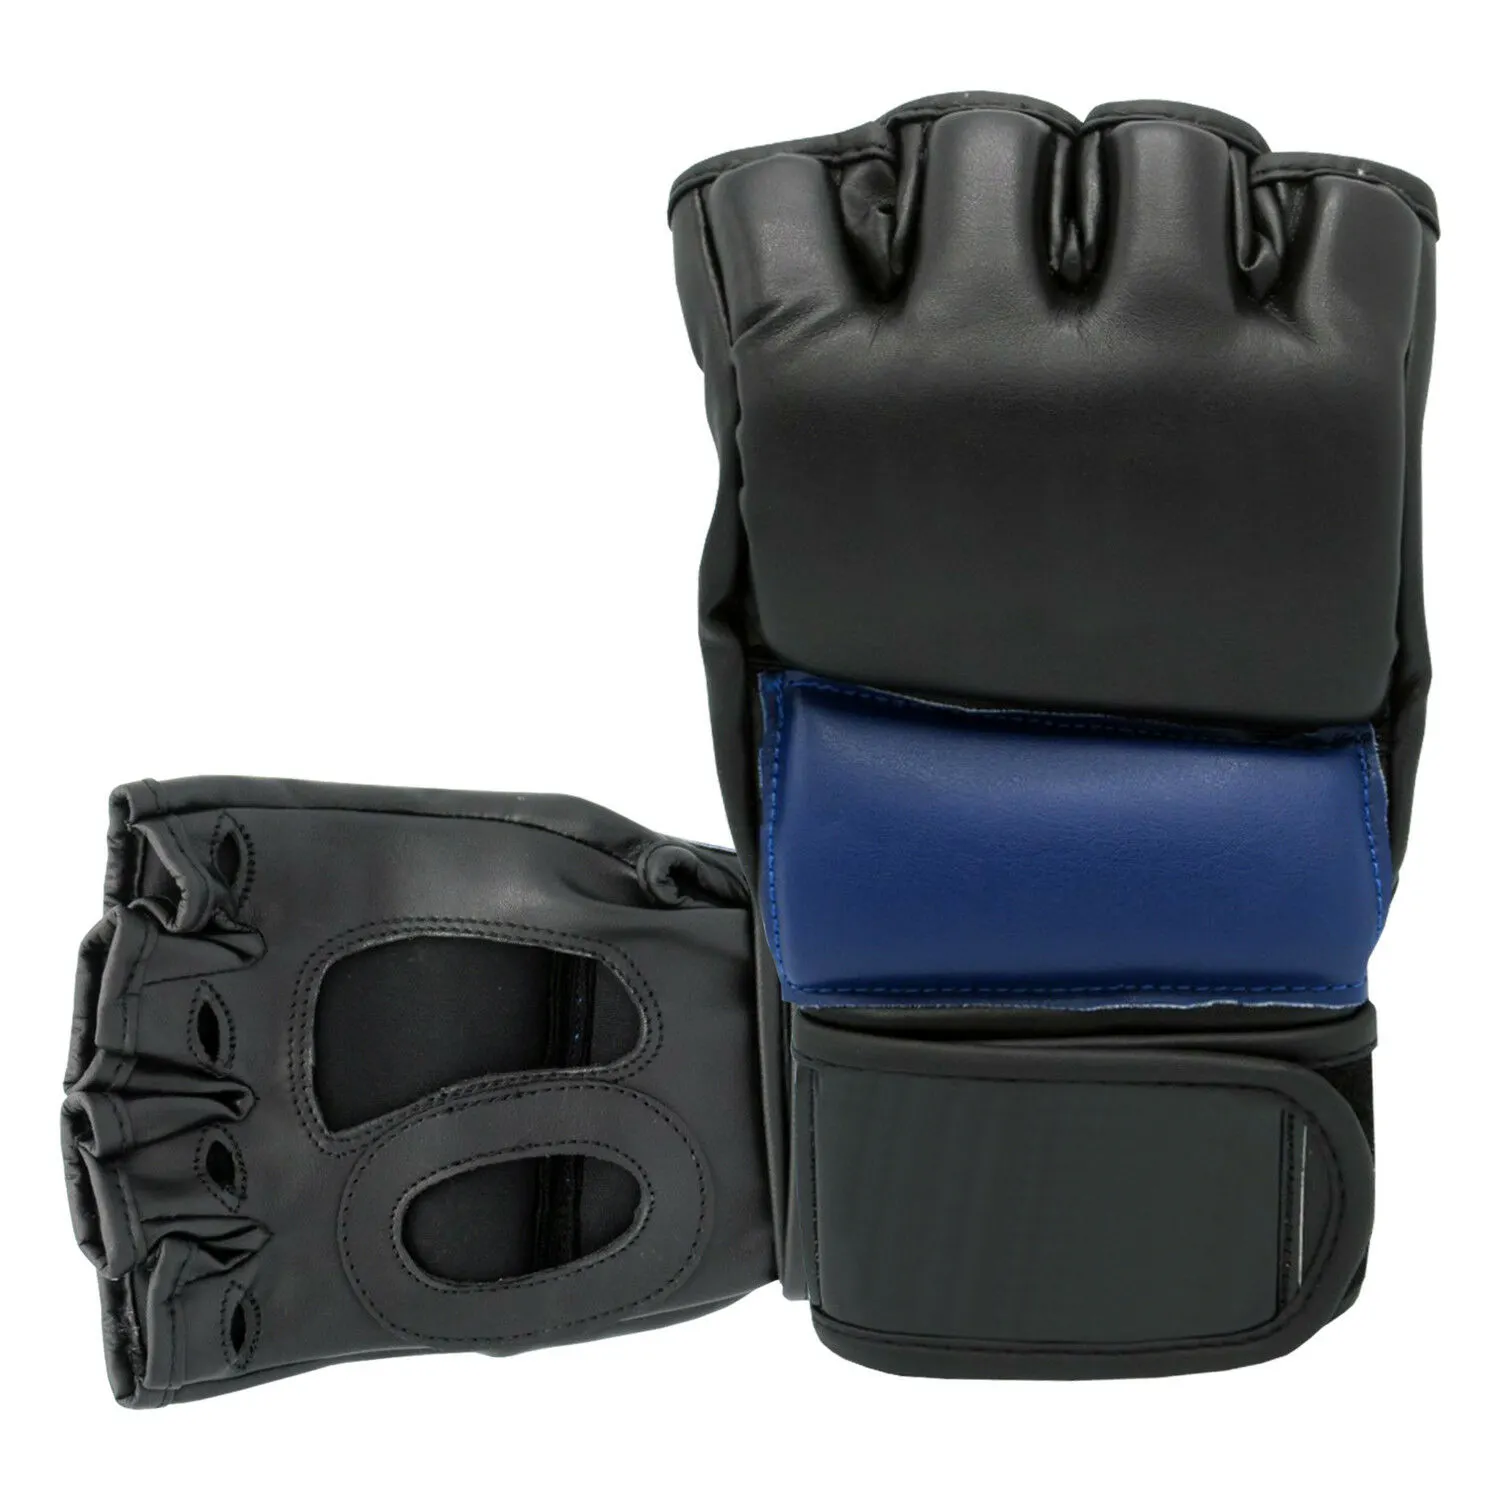 Custom Made Mma Half Vinger Bokshandschoenen Training En Vechten De Hoge Kwaliteit Pu En Koeienhuid Lederen Handschoenen